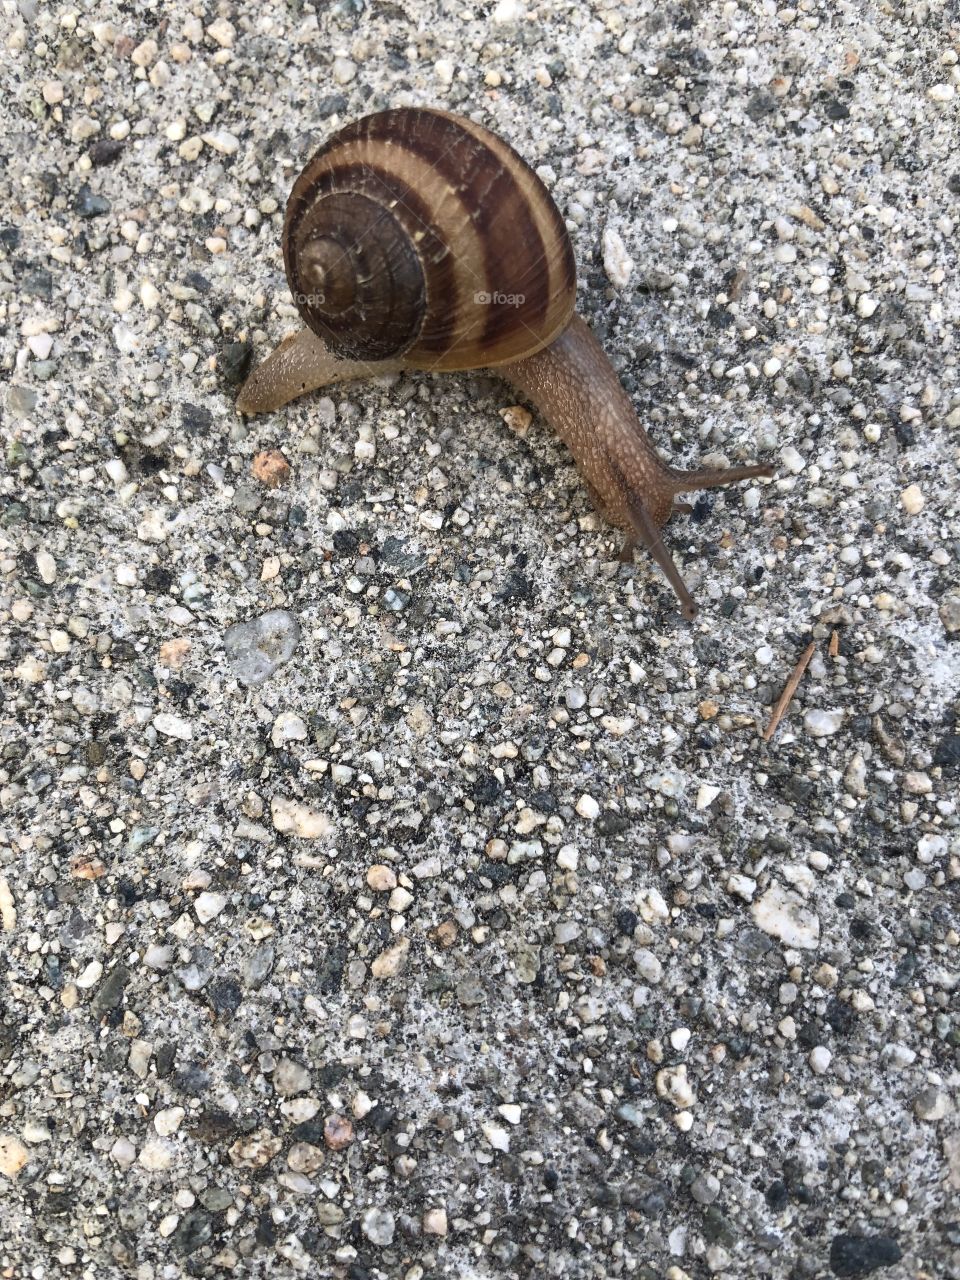 Snail is lost